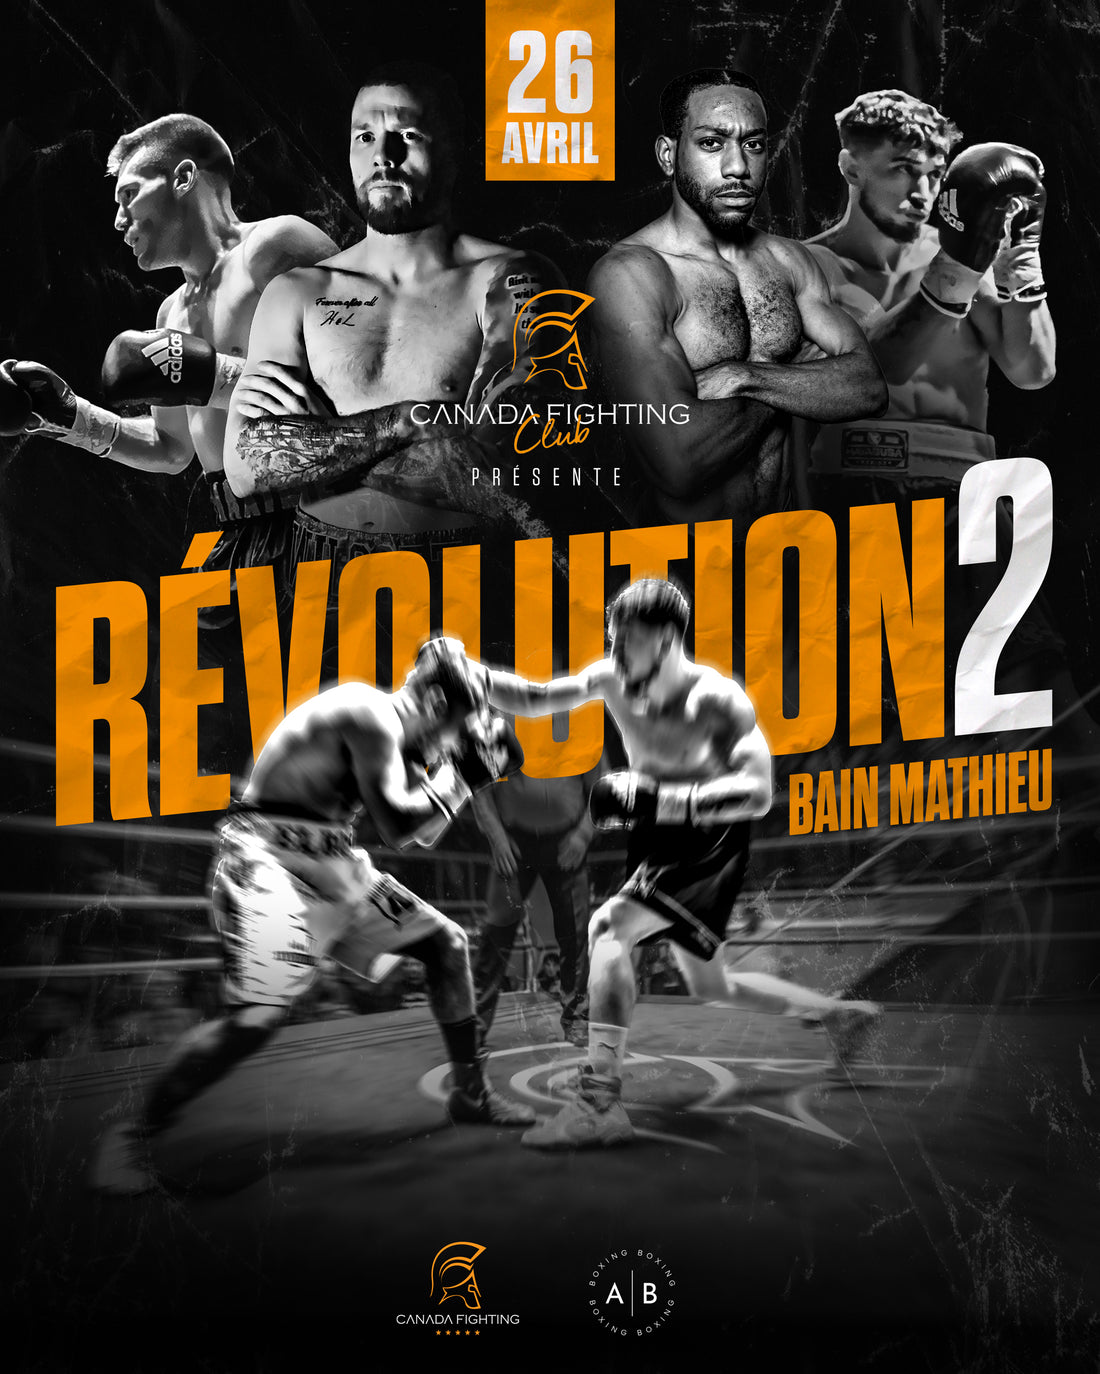 Gala de Boxe Révolution 2 au Bain Mathieu présenté par Canada Fighting Club